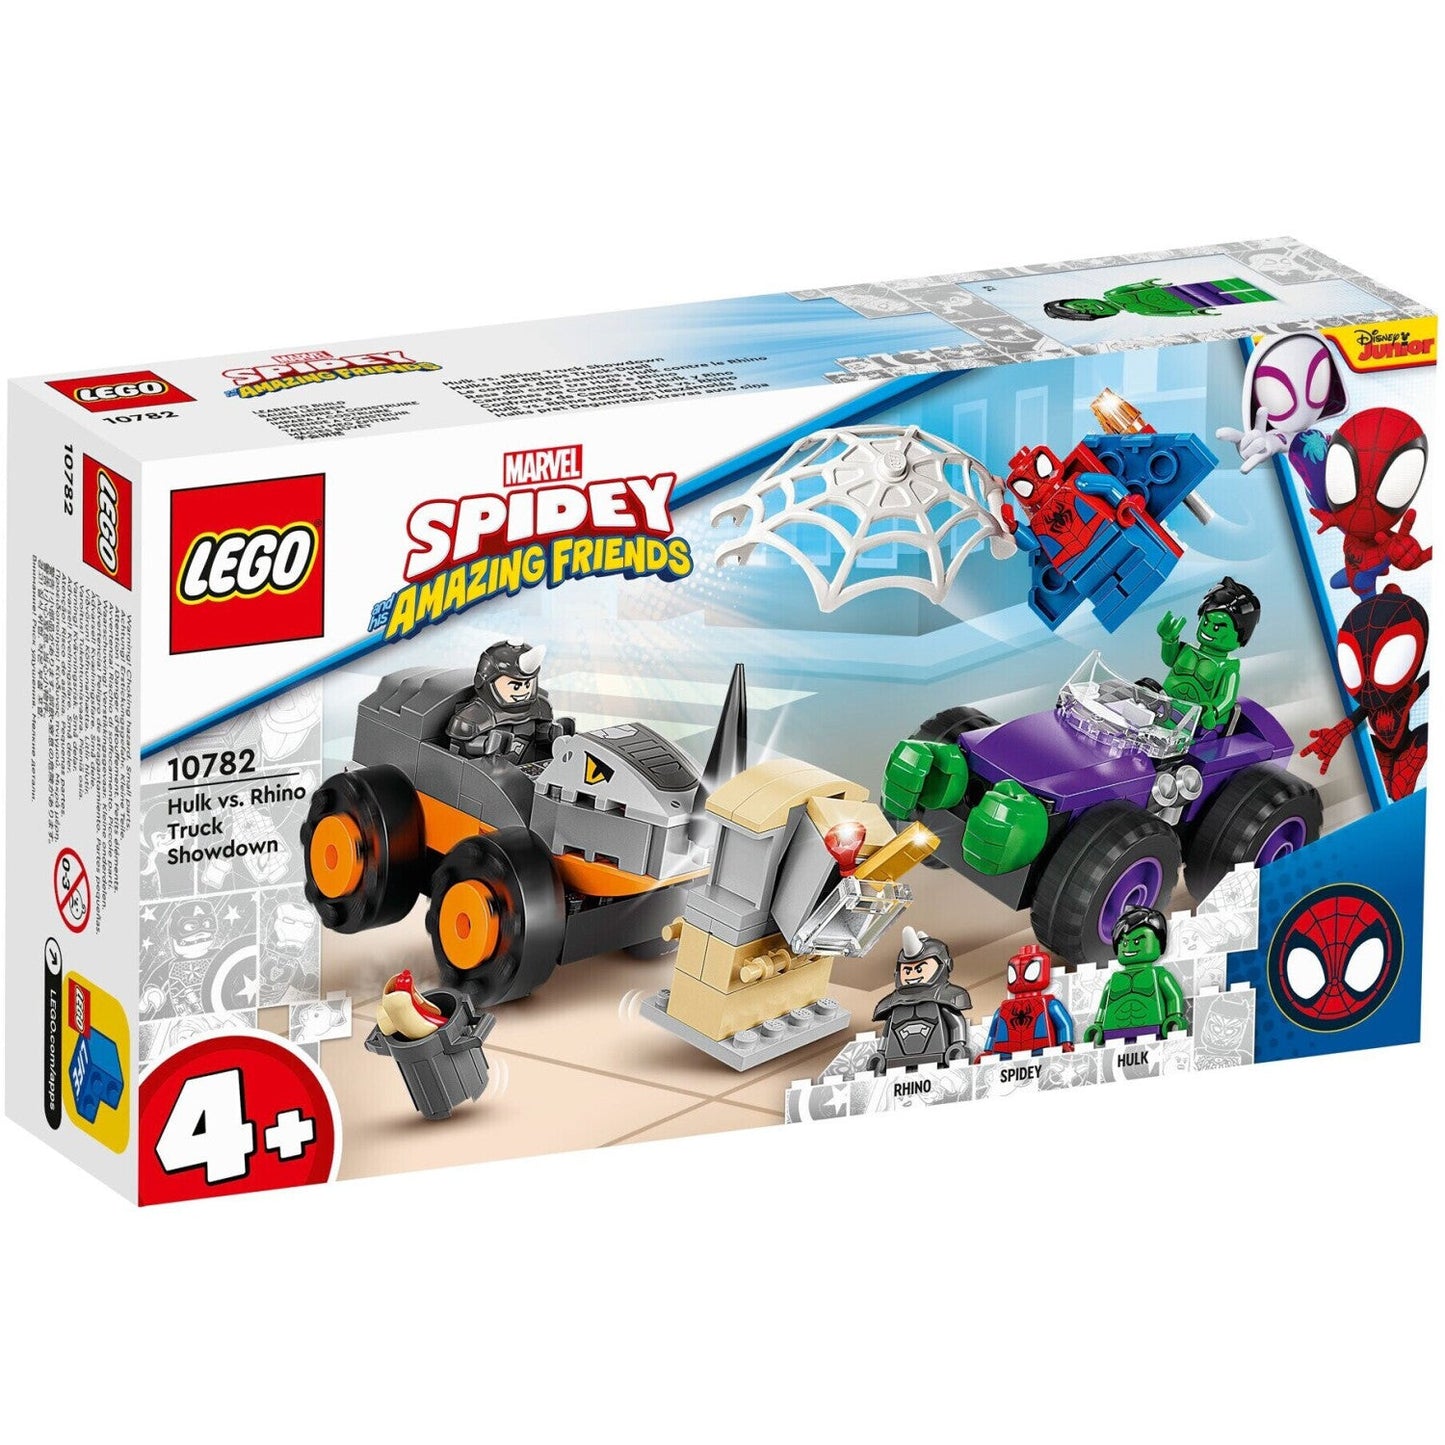 LEGO 10782 Spidey - Hulks und Rhinos Truck-Duell ab 4+